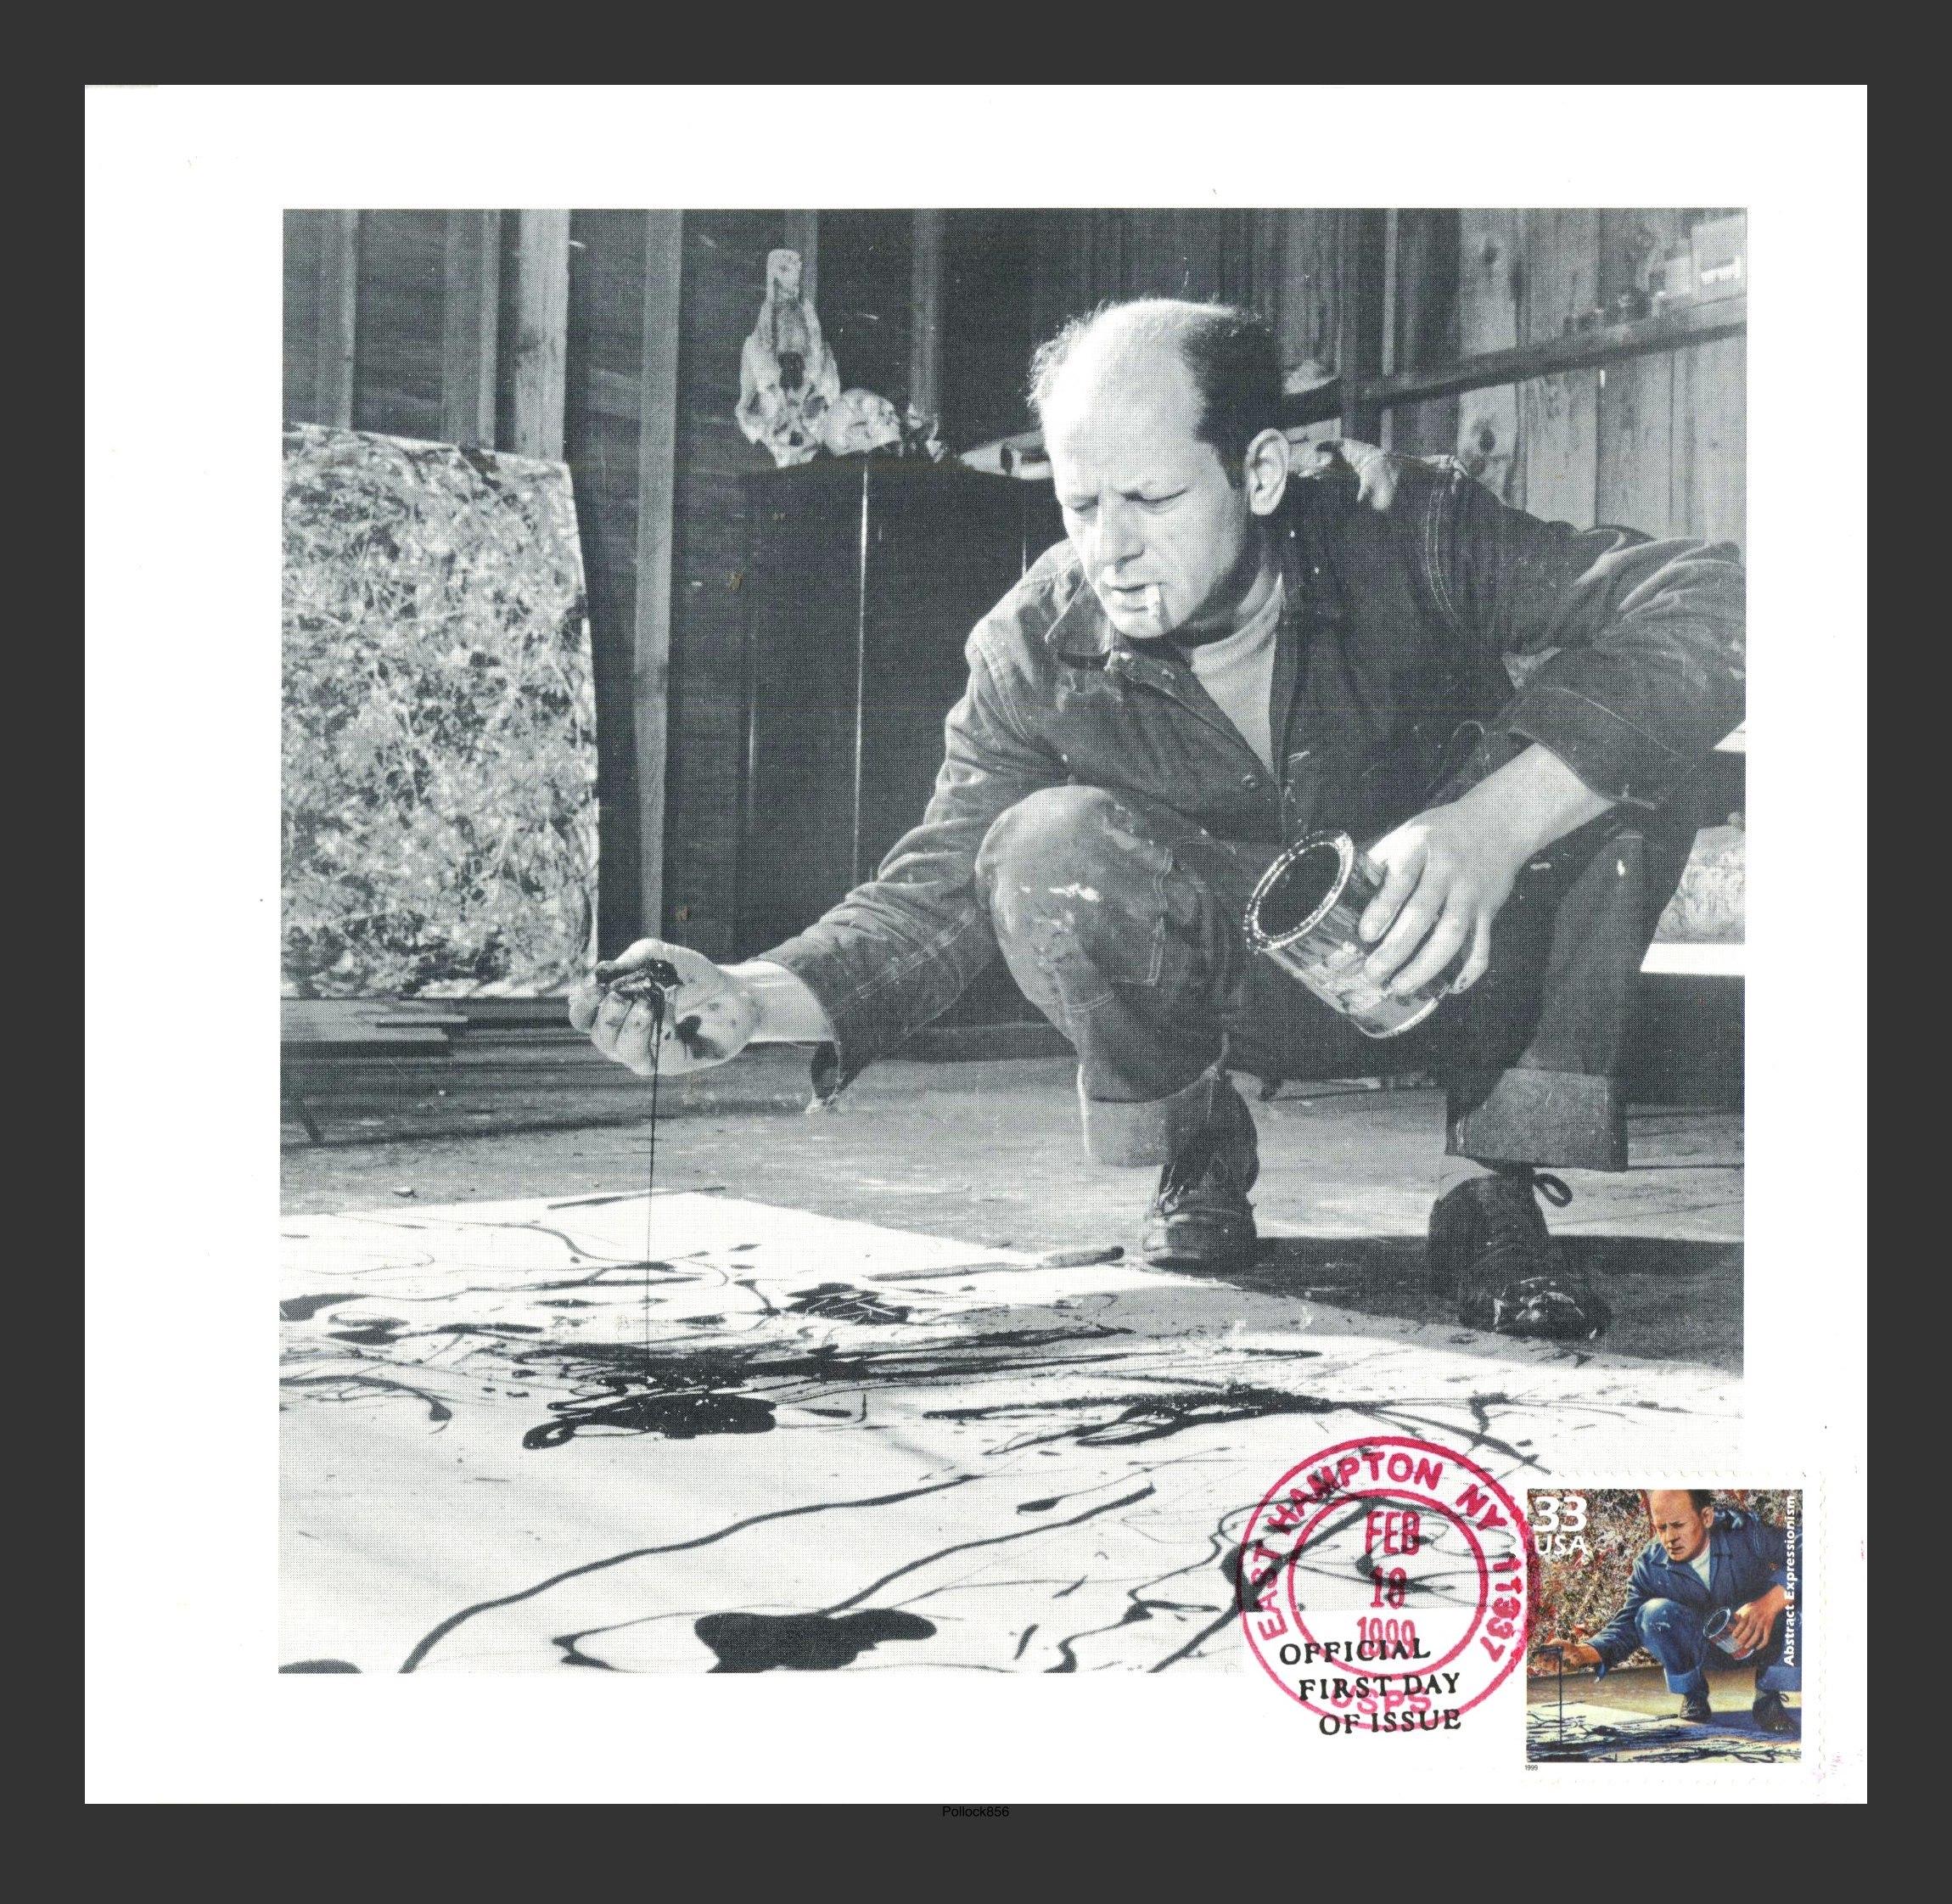 Jackson Pollock
Exklusive Einladung mit Ersttagsbrief, 1999
Offsetlithographie ausklappbare Einladung mit gestempeltem Ersttagsbrief
Briefmarke mit offiziellem Poststempel des US Post Office, datiert mit Southampton, NY, mit dem Text "Official First